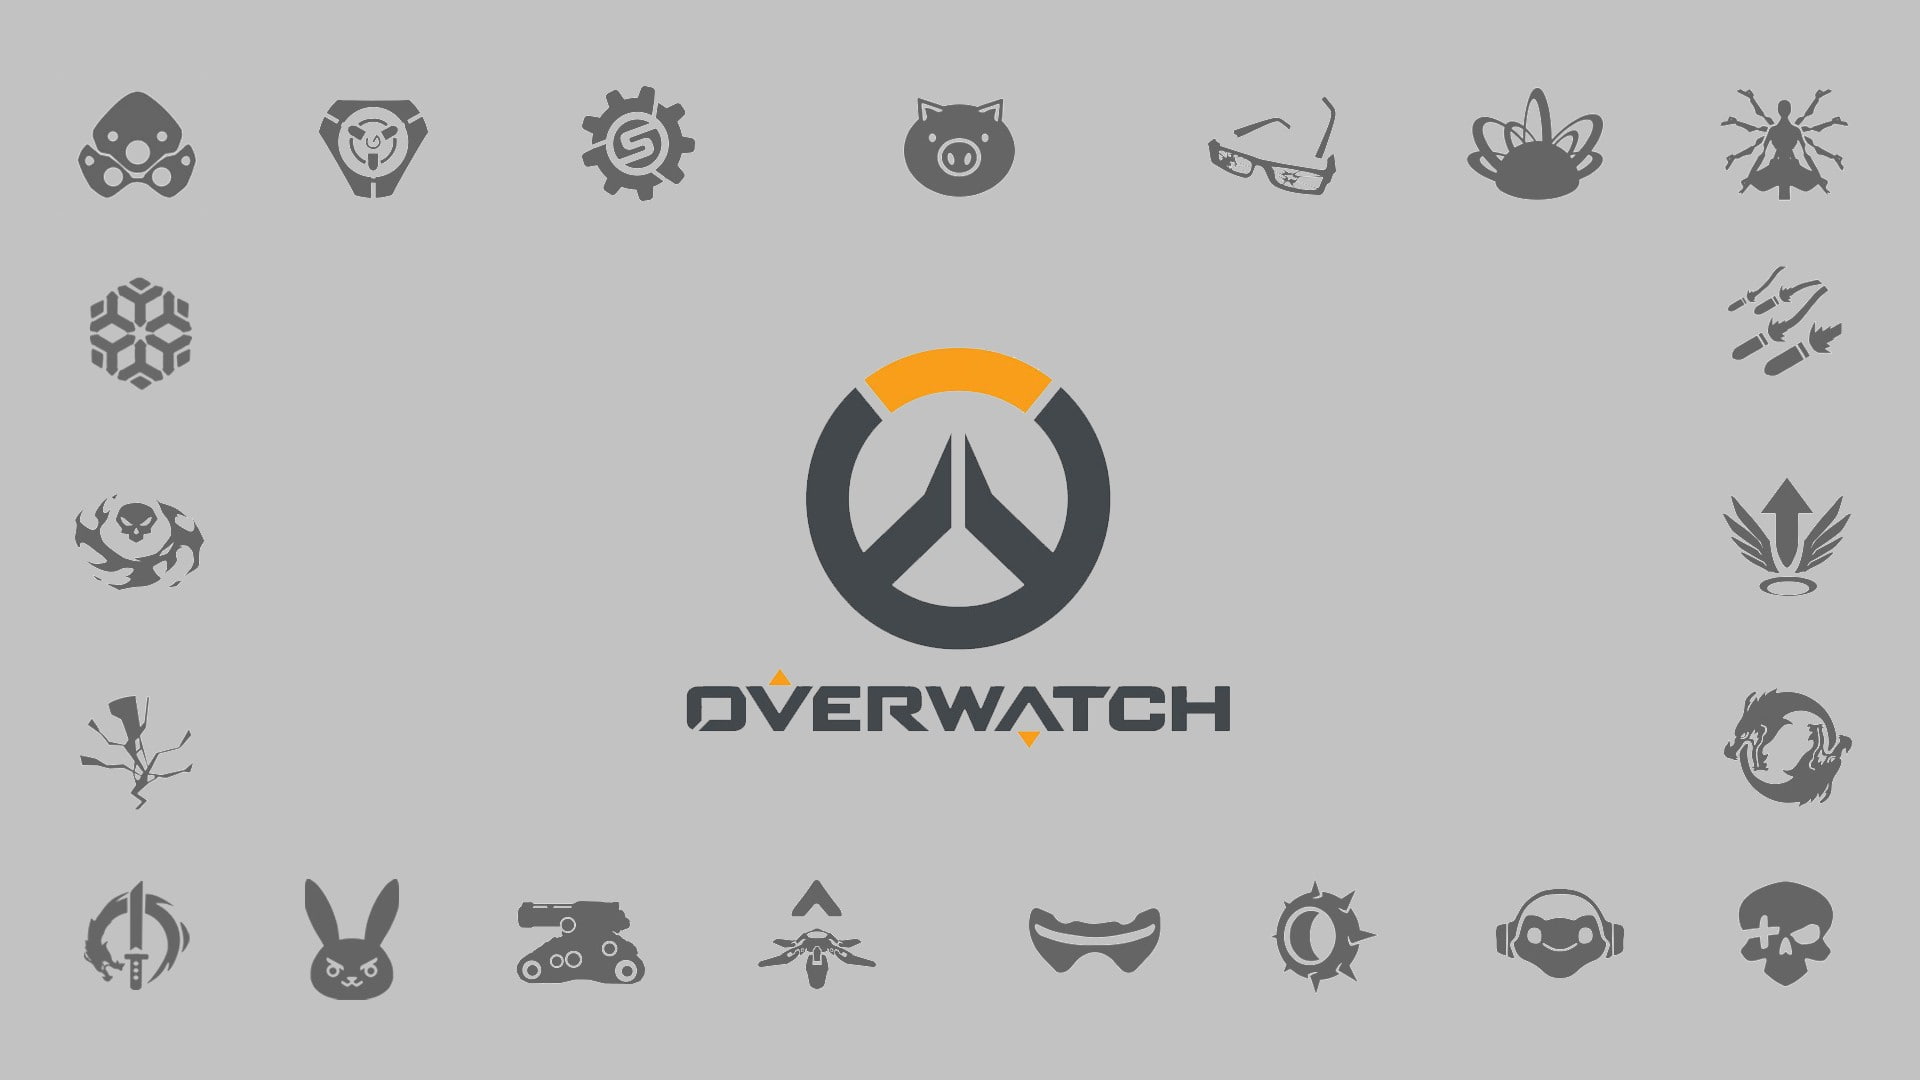 Blizzard Entertainment, livewirehd (Author), logo, Overwatch